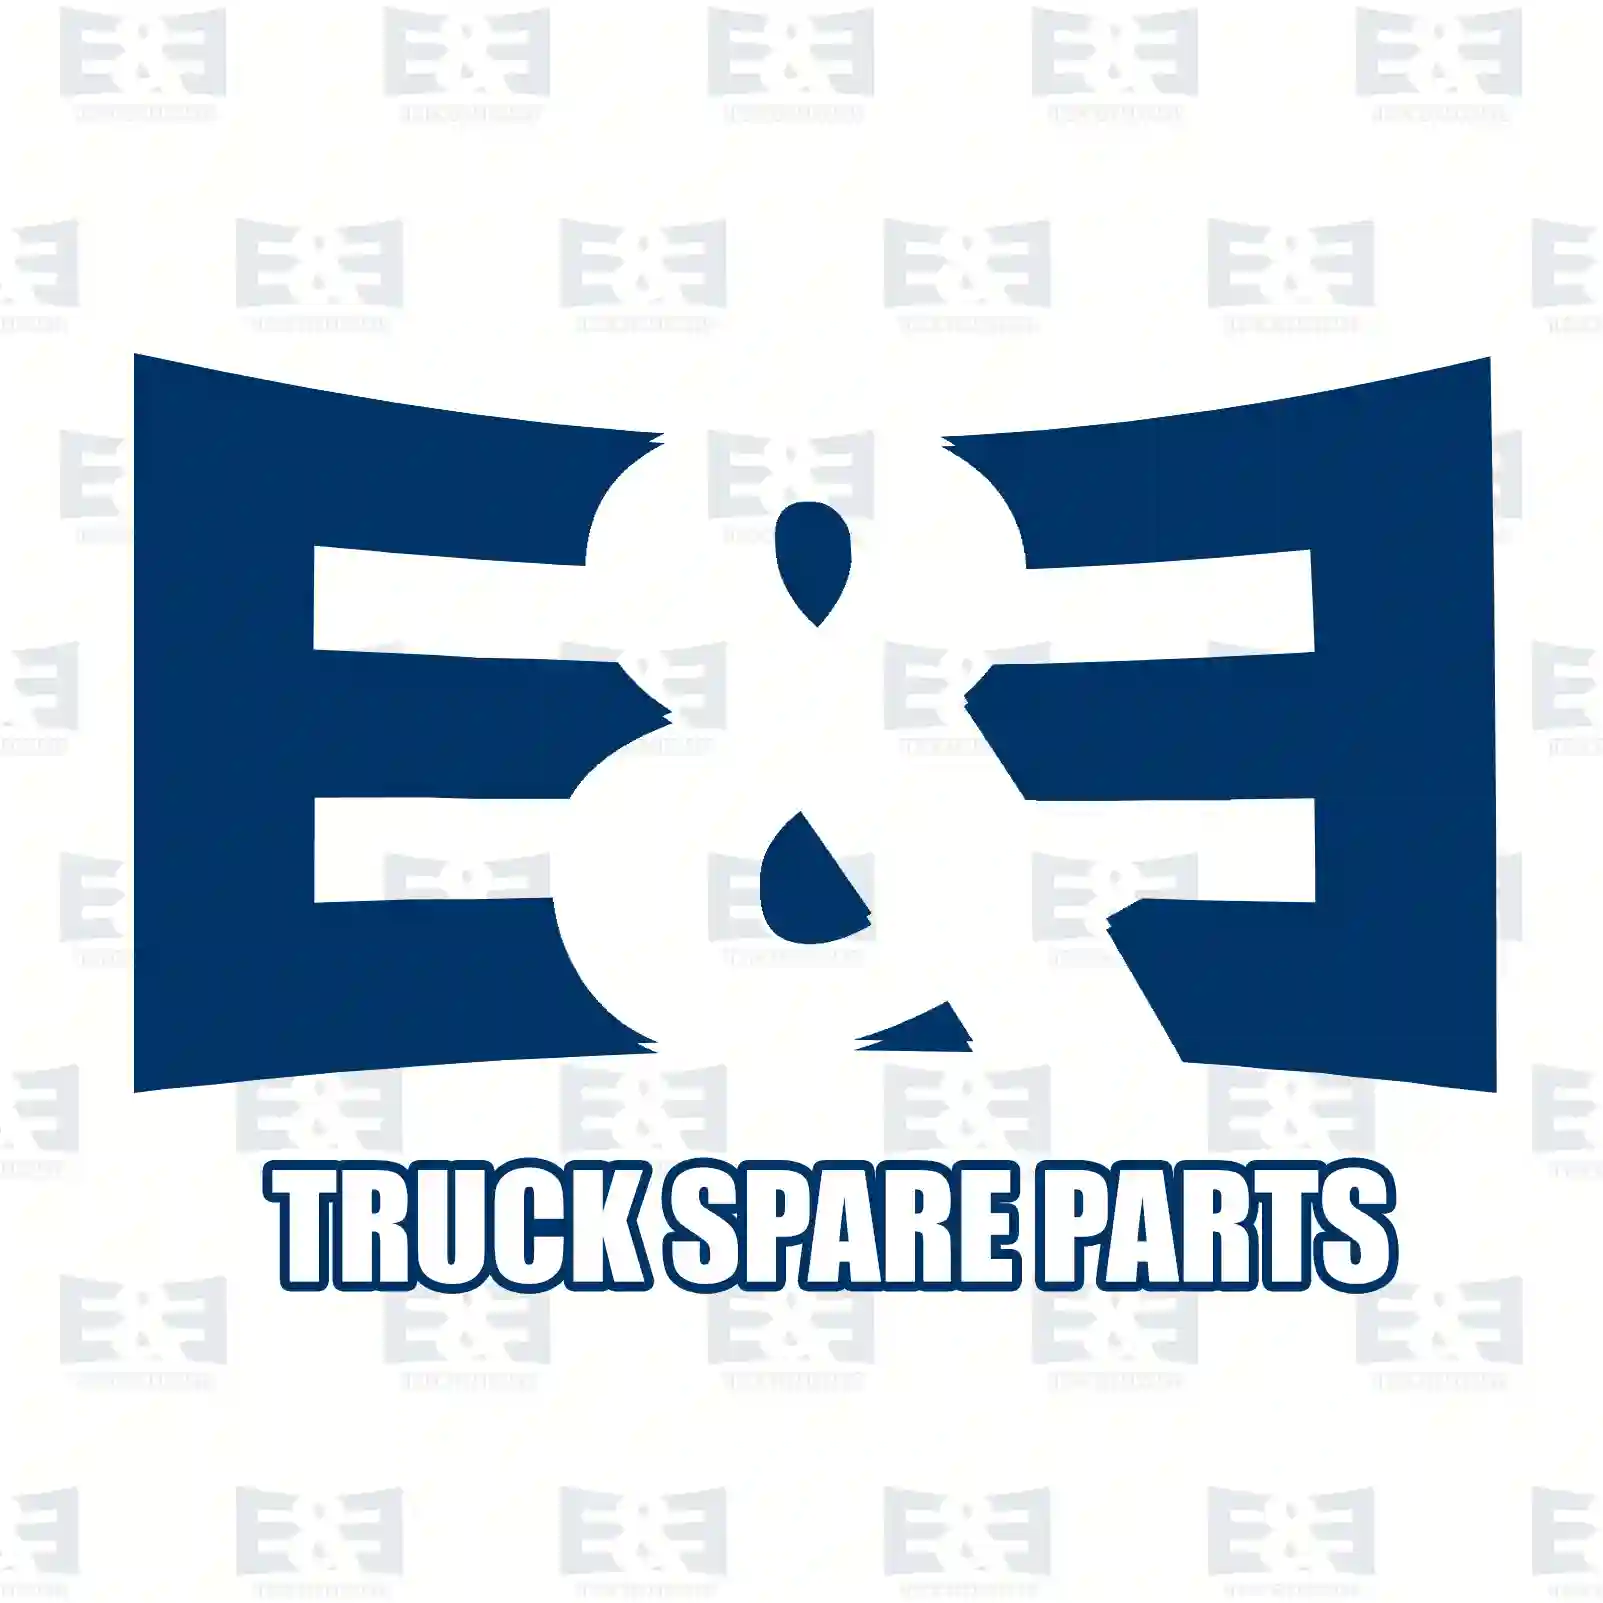  Brake shoe kit, reinforced version || E&E Truck Spare Parts | Truck Spare Parts, Auotomotive Spare Parts